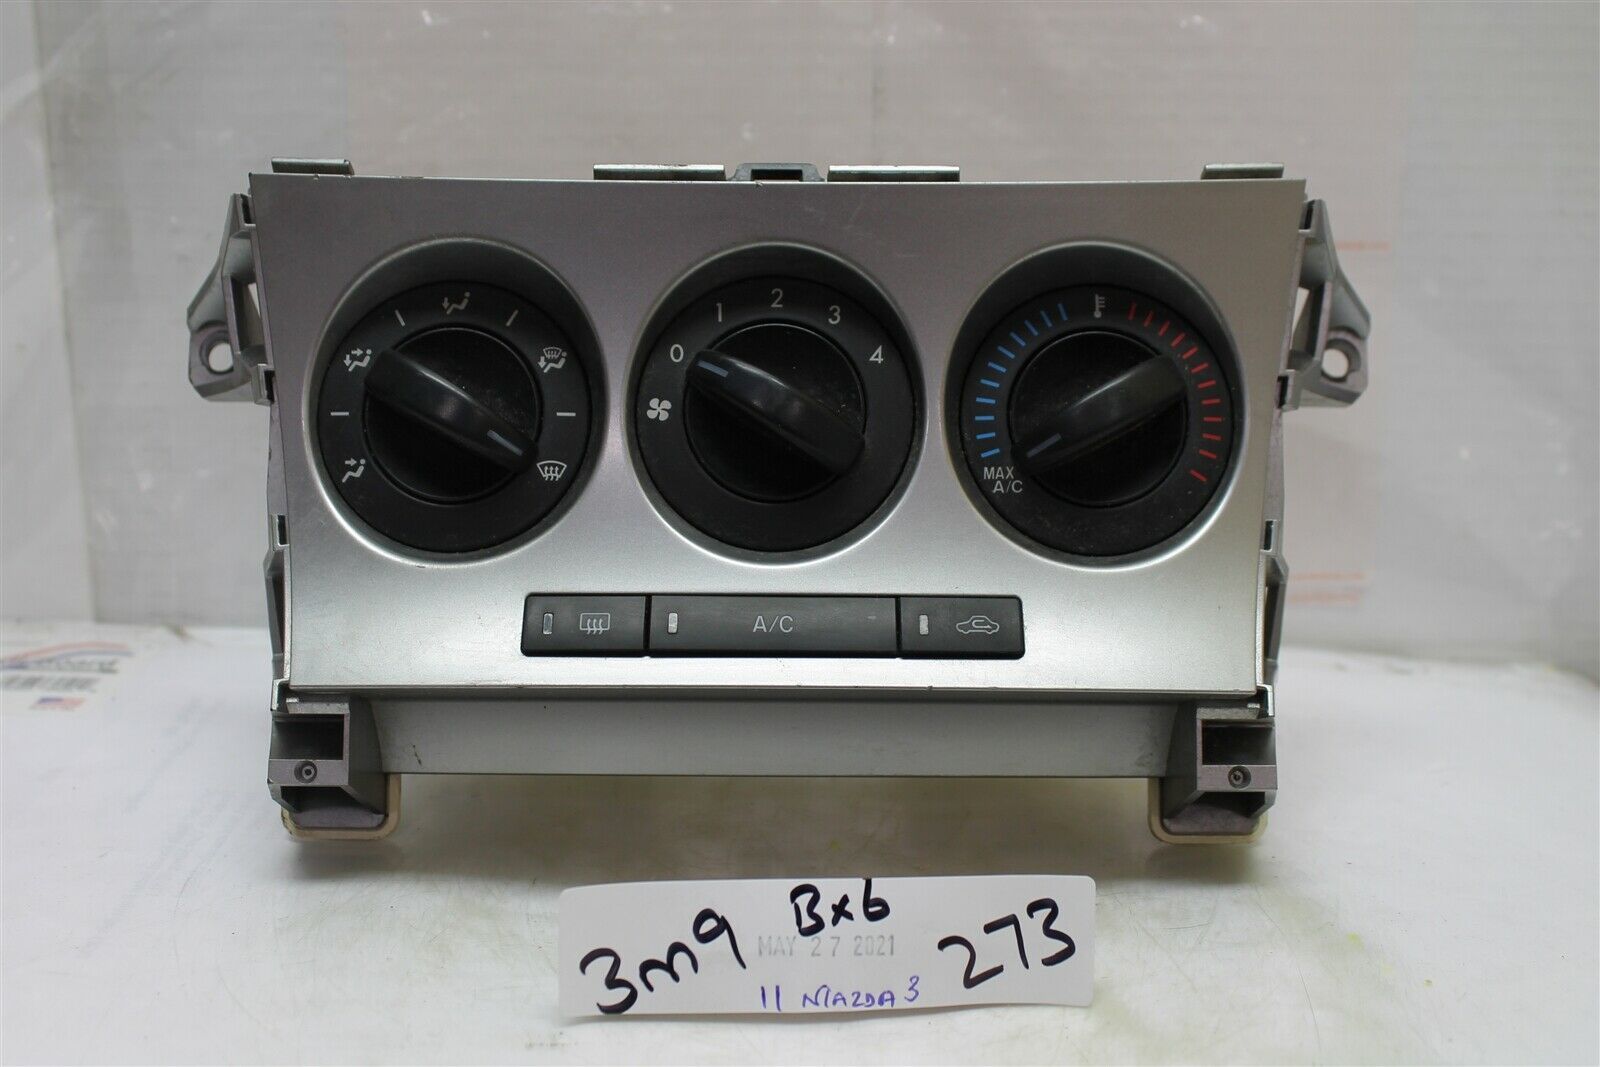 2011-2013 Mazda 3 AC Heat Temperature Climate Control Switch OEM 273 3M9-B6 - $50.48